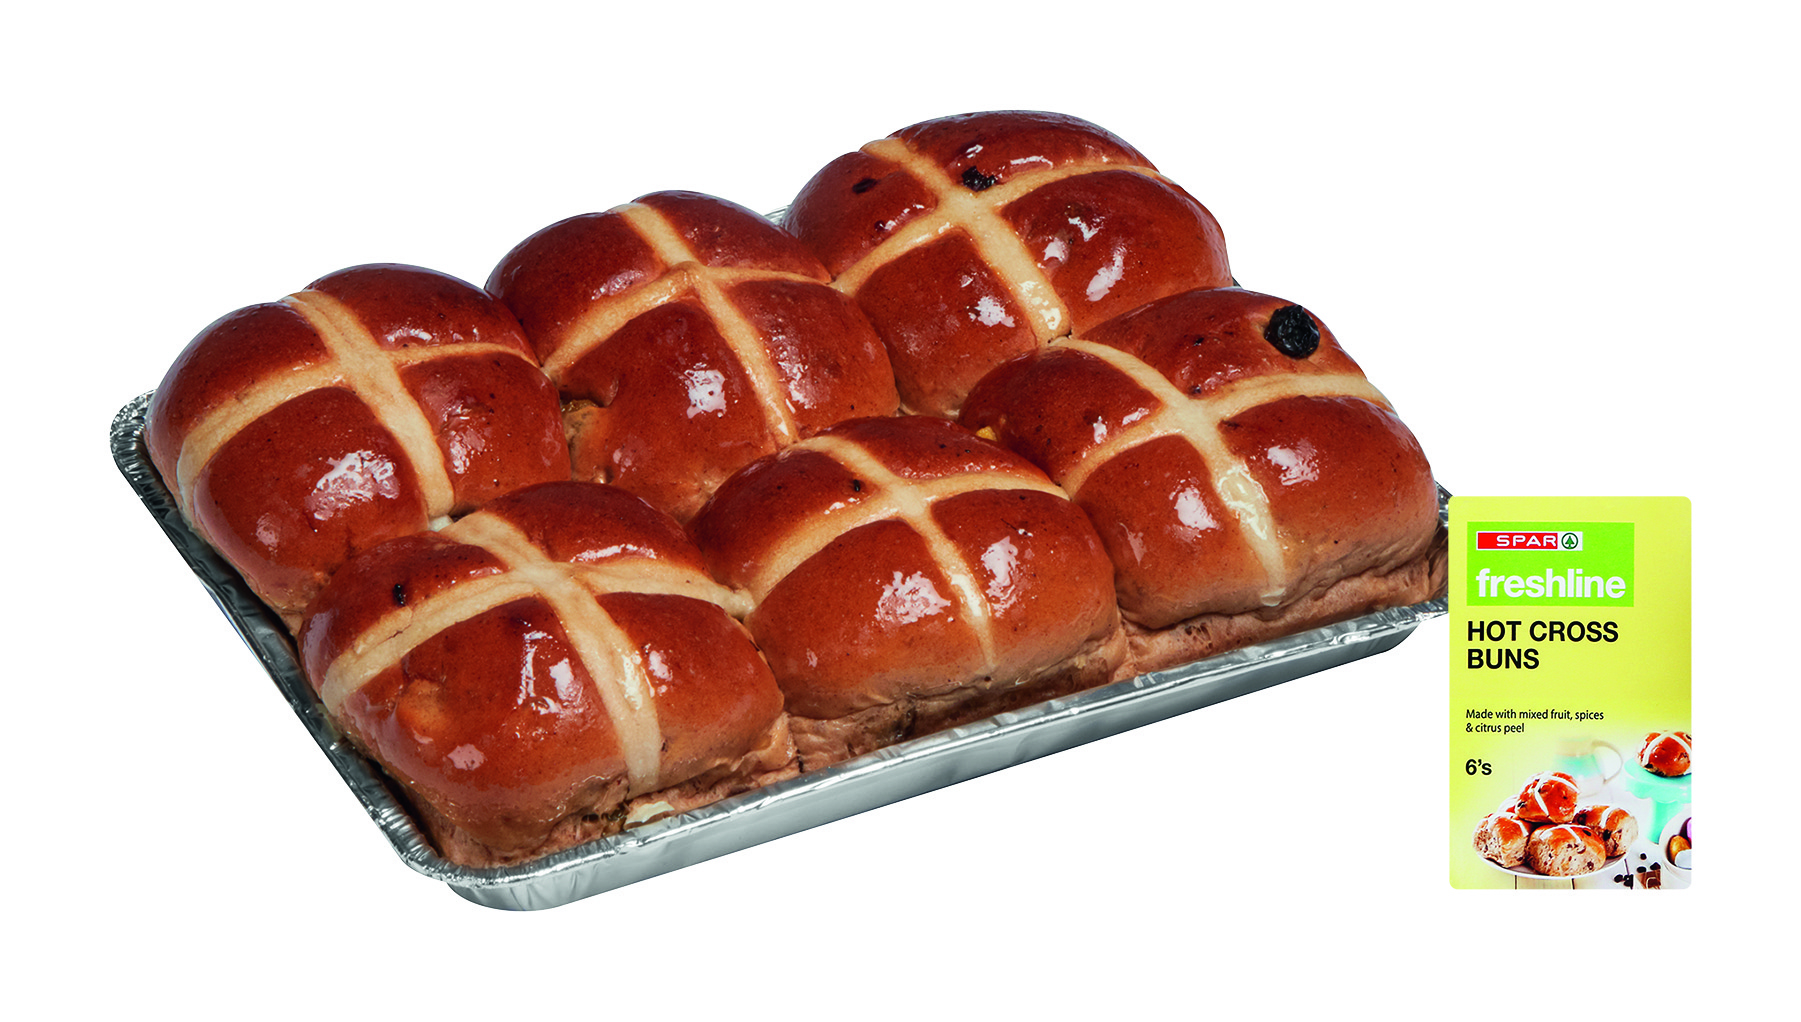 freshline hot cross buns